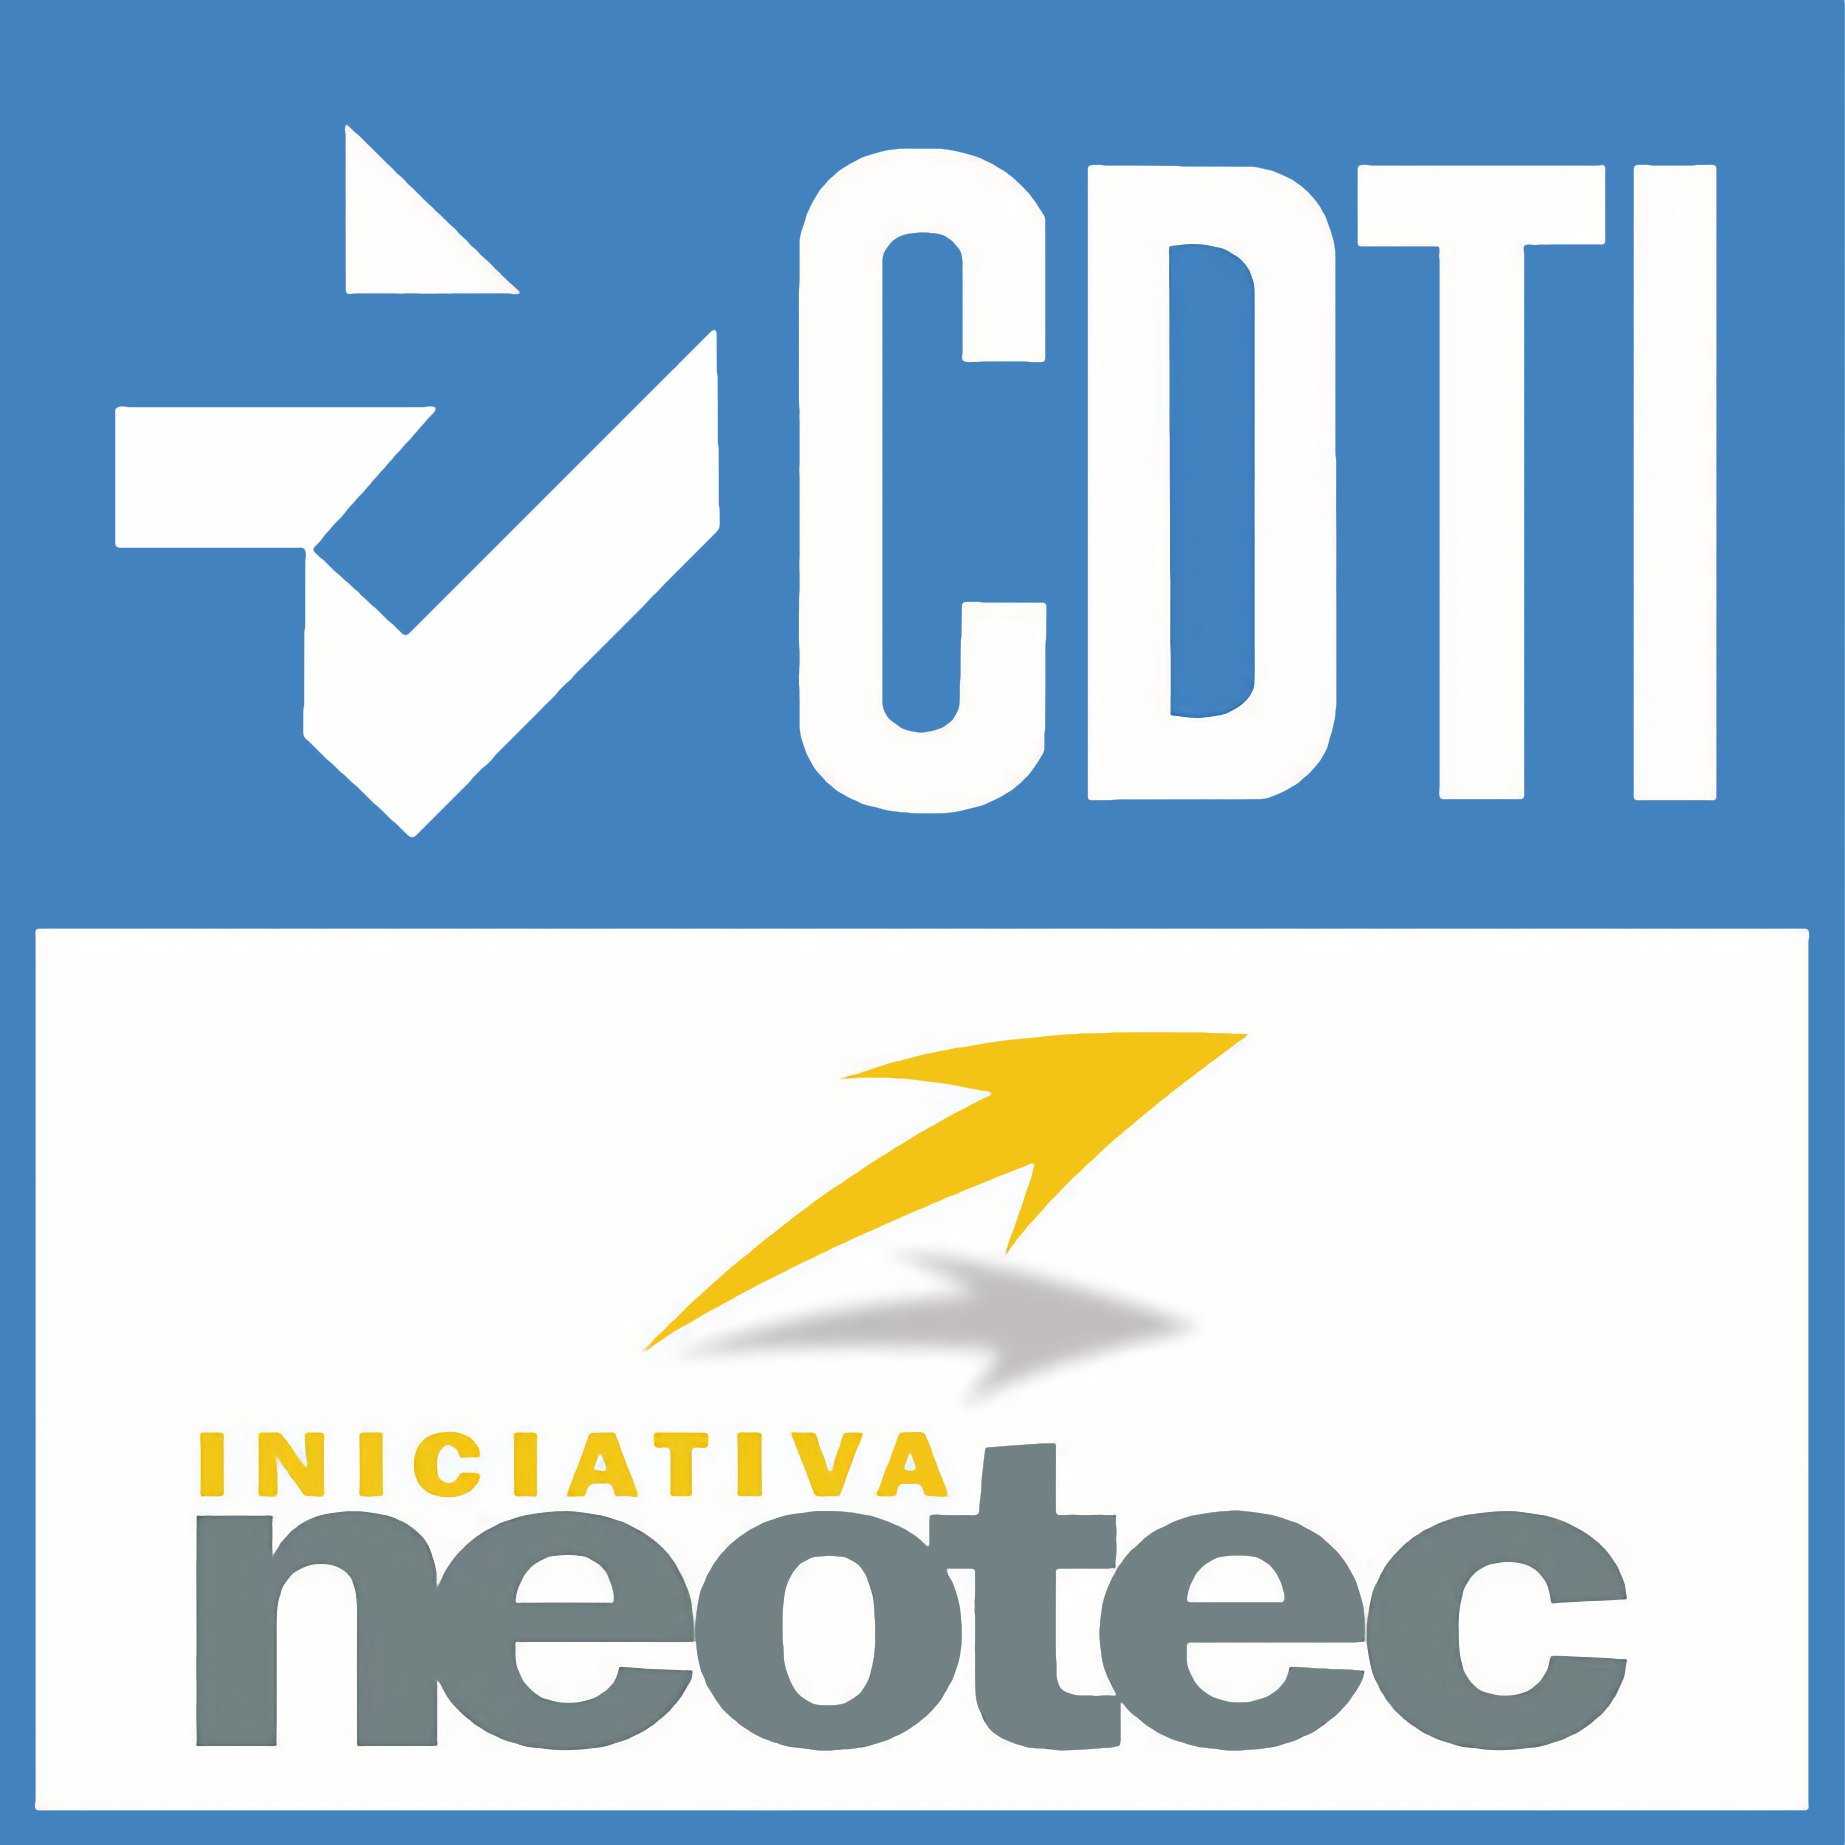 Logo DCTI